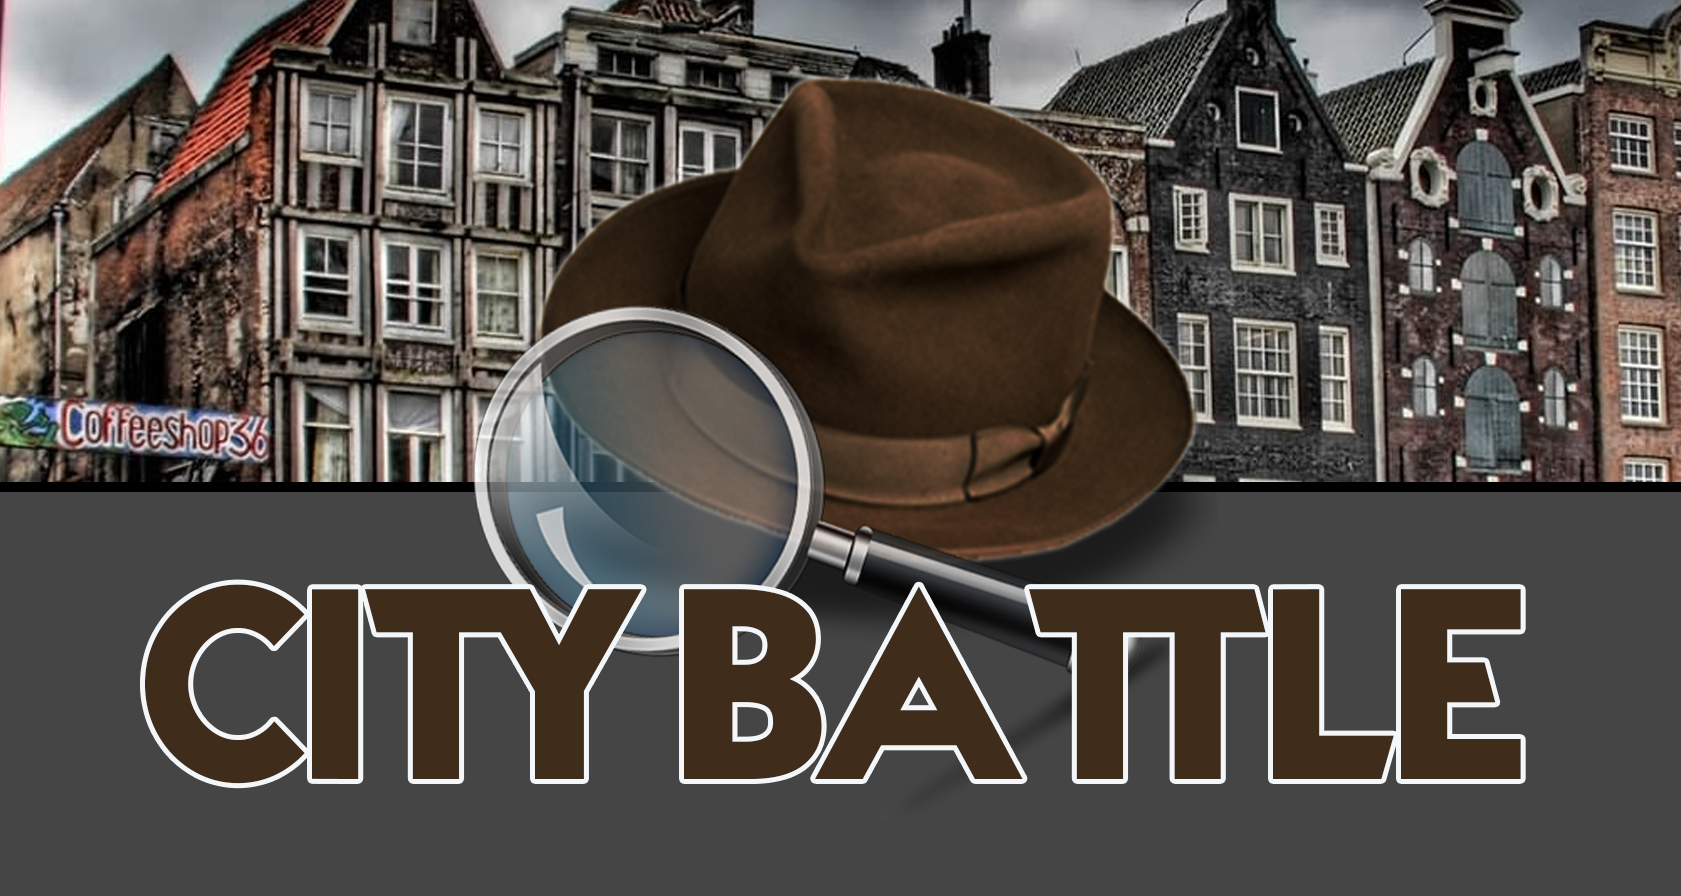 Personeelsuitje Middelburg: De Ultieme City Battle